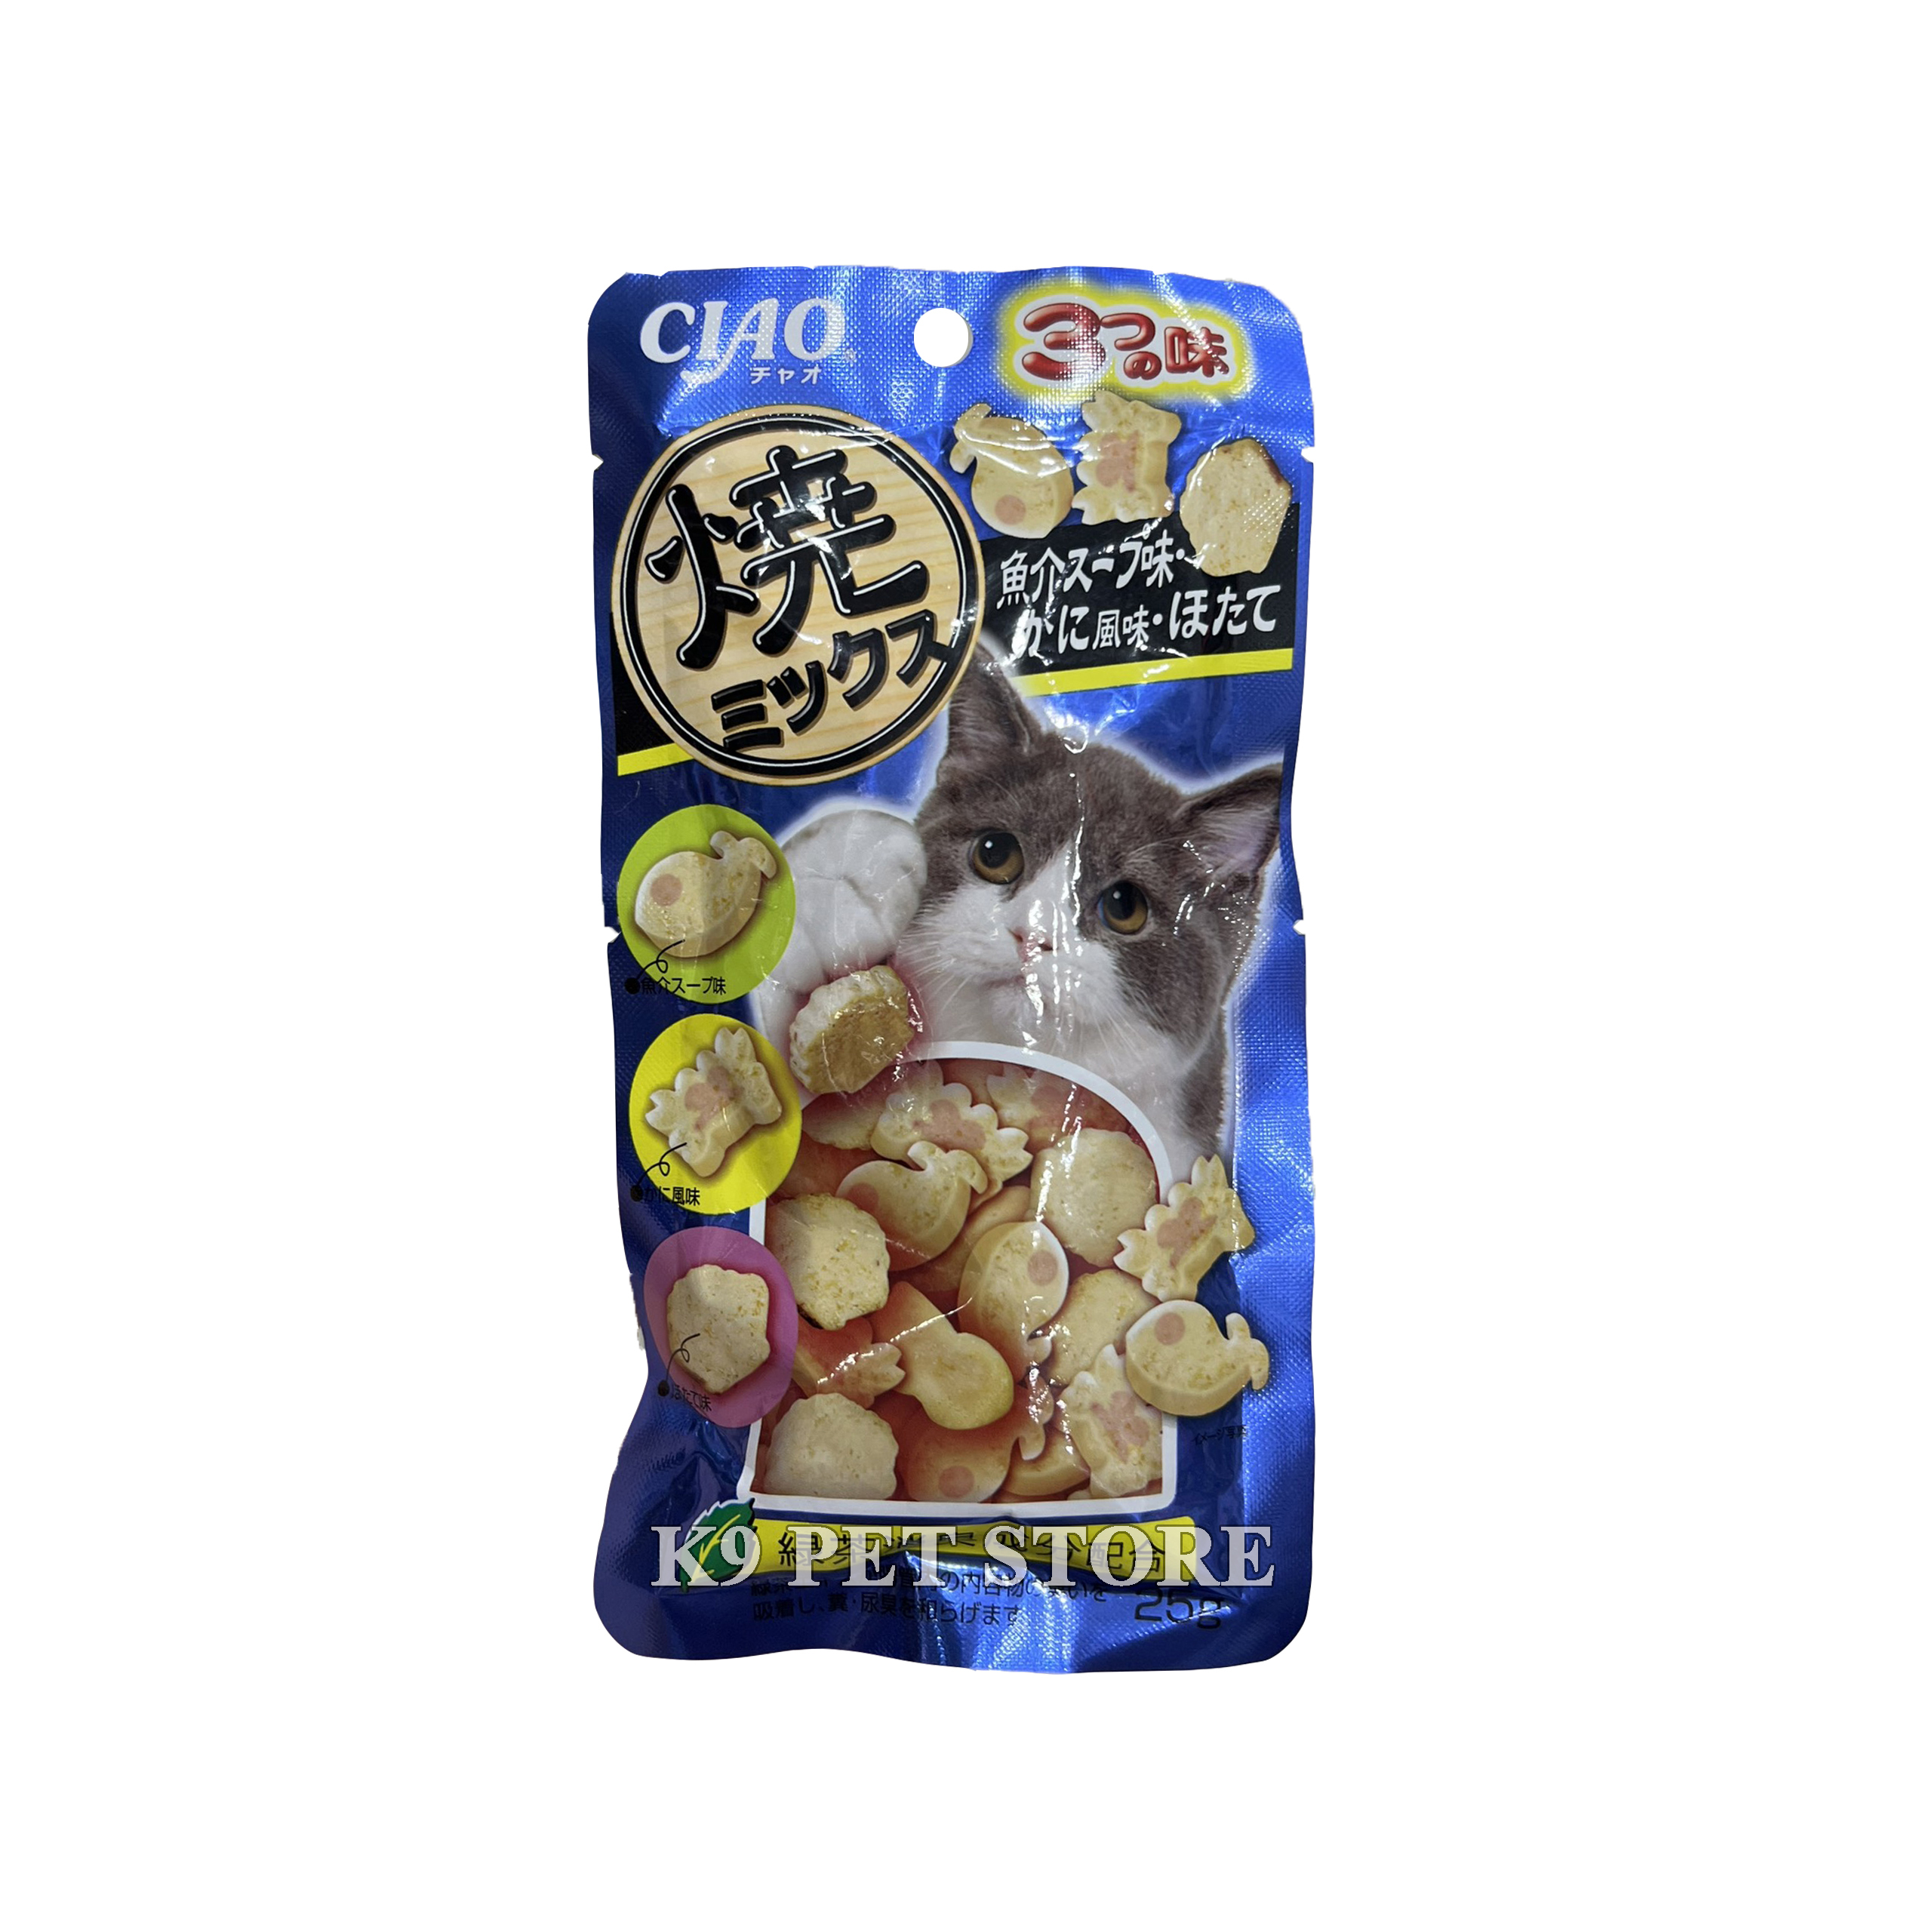 Ciao snack mềm cho mèo 25g vị gà, cá Bonito sấy khô hải sản và cua (QSC-125)